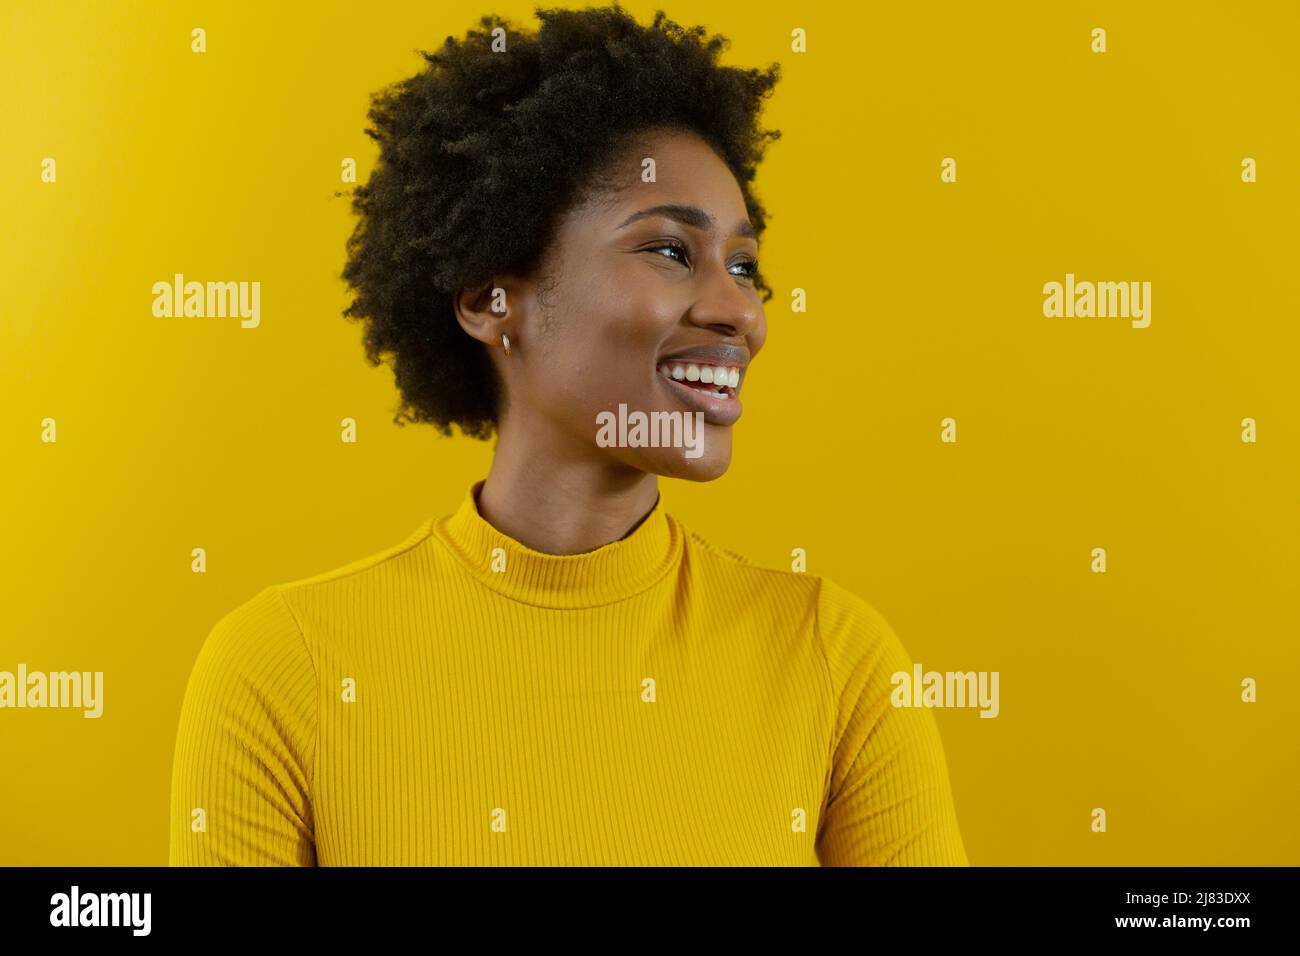 Fröhliche junge afroamerikanische Geschäftsfrau mit afro-Frisur, die gegen die gelbe Wand schaut Stockfoto